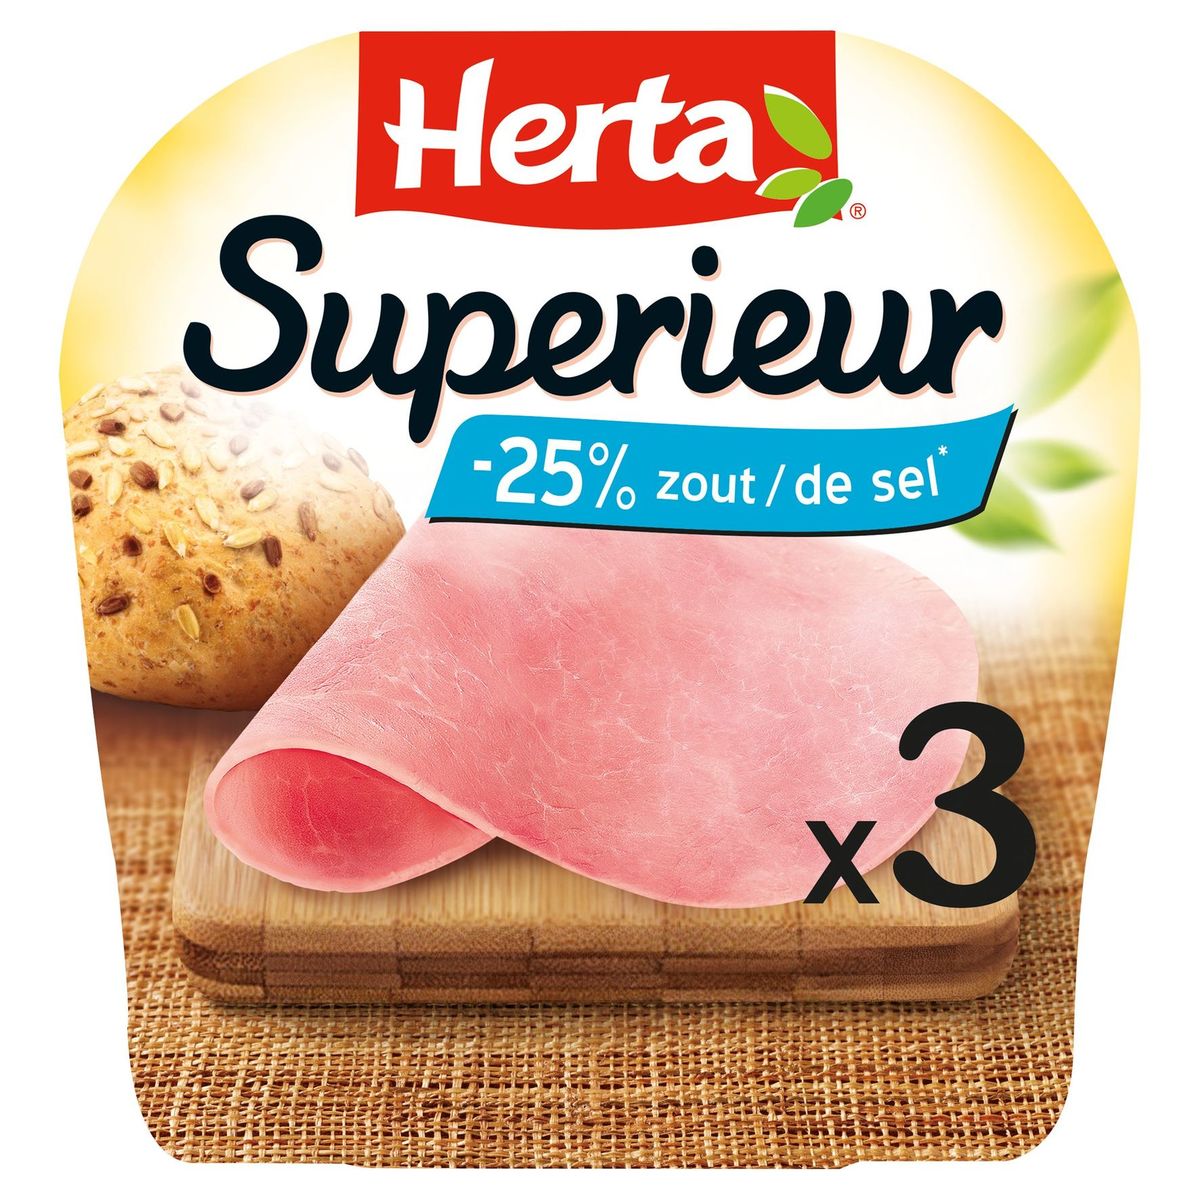 Herta Superieur Ham -25% Zout 3 Sneden 100 g